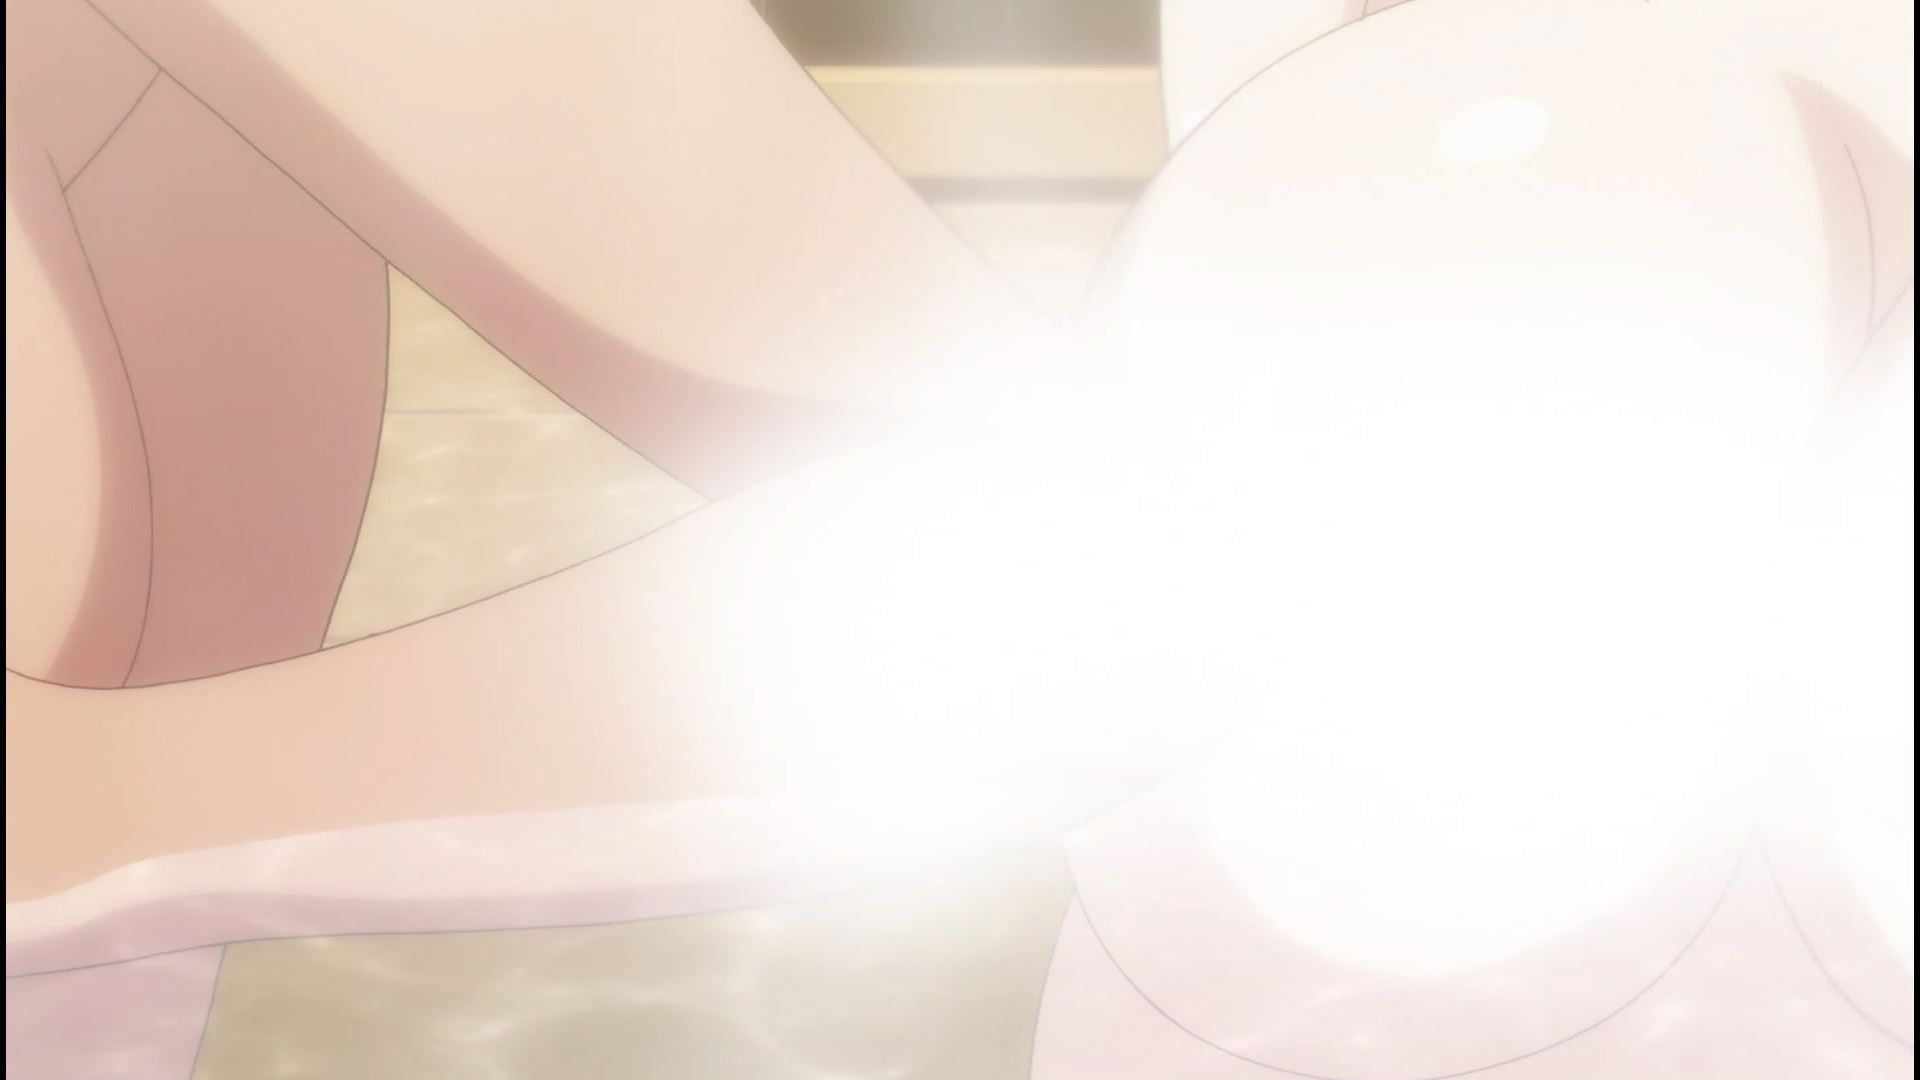 Anime [Kandagawa JETGIRLS] 8 episodes of girls erotic round-view bath bathing scene! 15